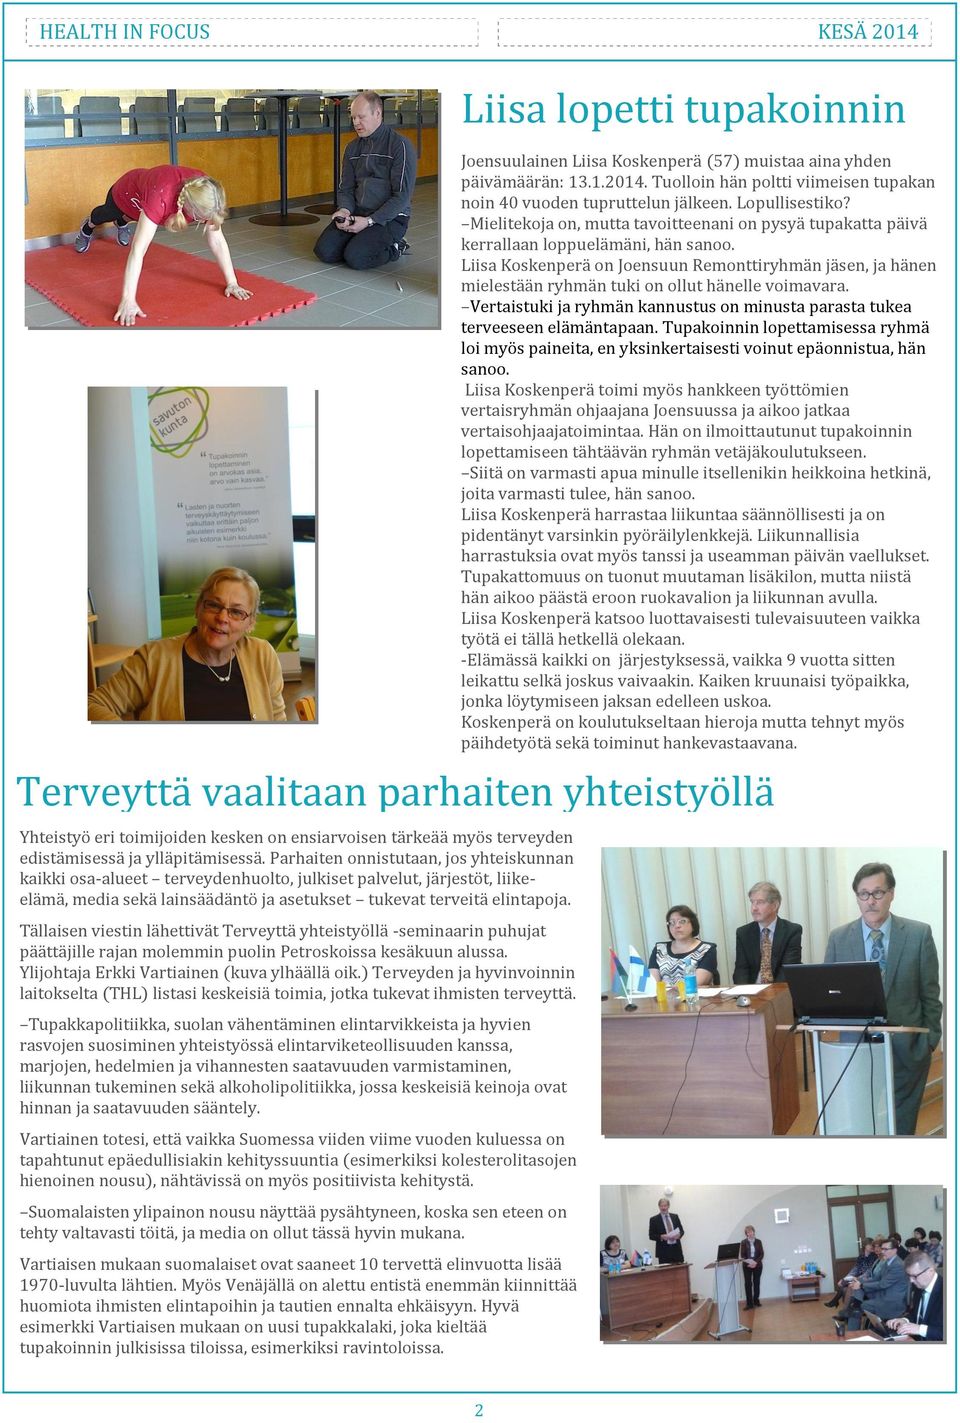 Tällaisen viestin lähettivät Terveyttä yhteistyöllä -seminaarin puhujat päättäjille rajan molemmin puolin Petroskoissa kesäkuun alussa. Ylijohtaja Erkki Vartiainen (kuva ylhäällä oik.